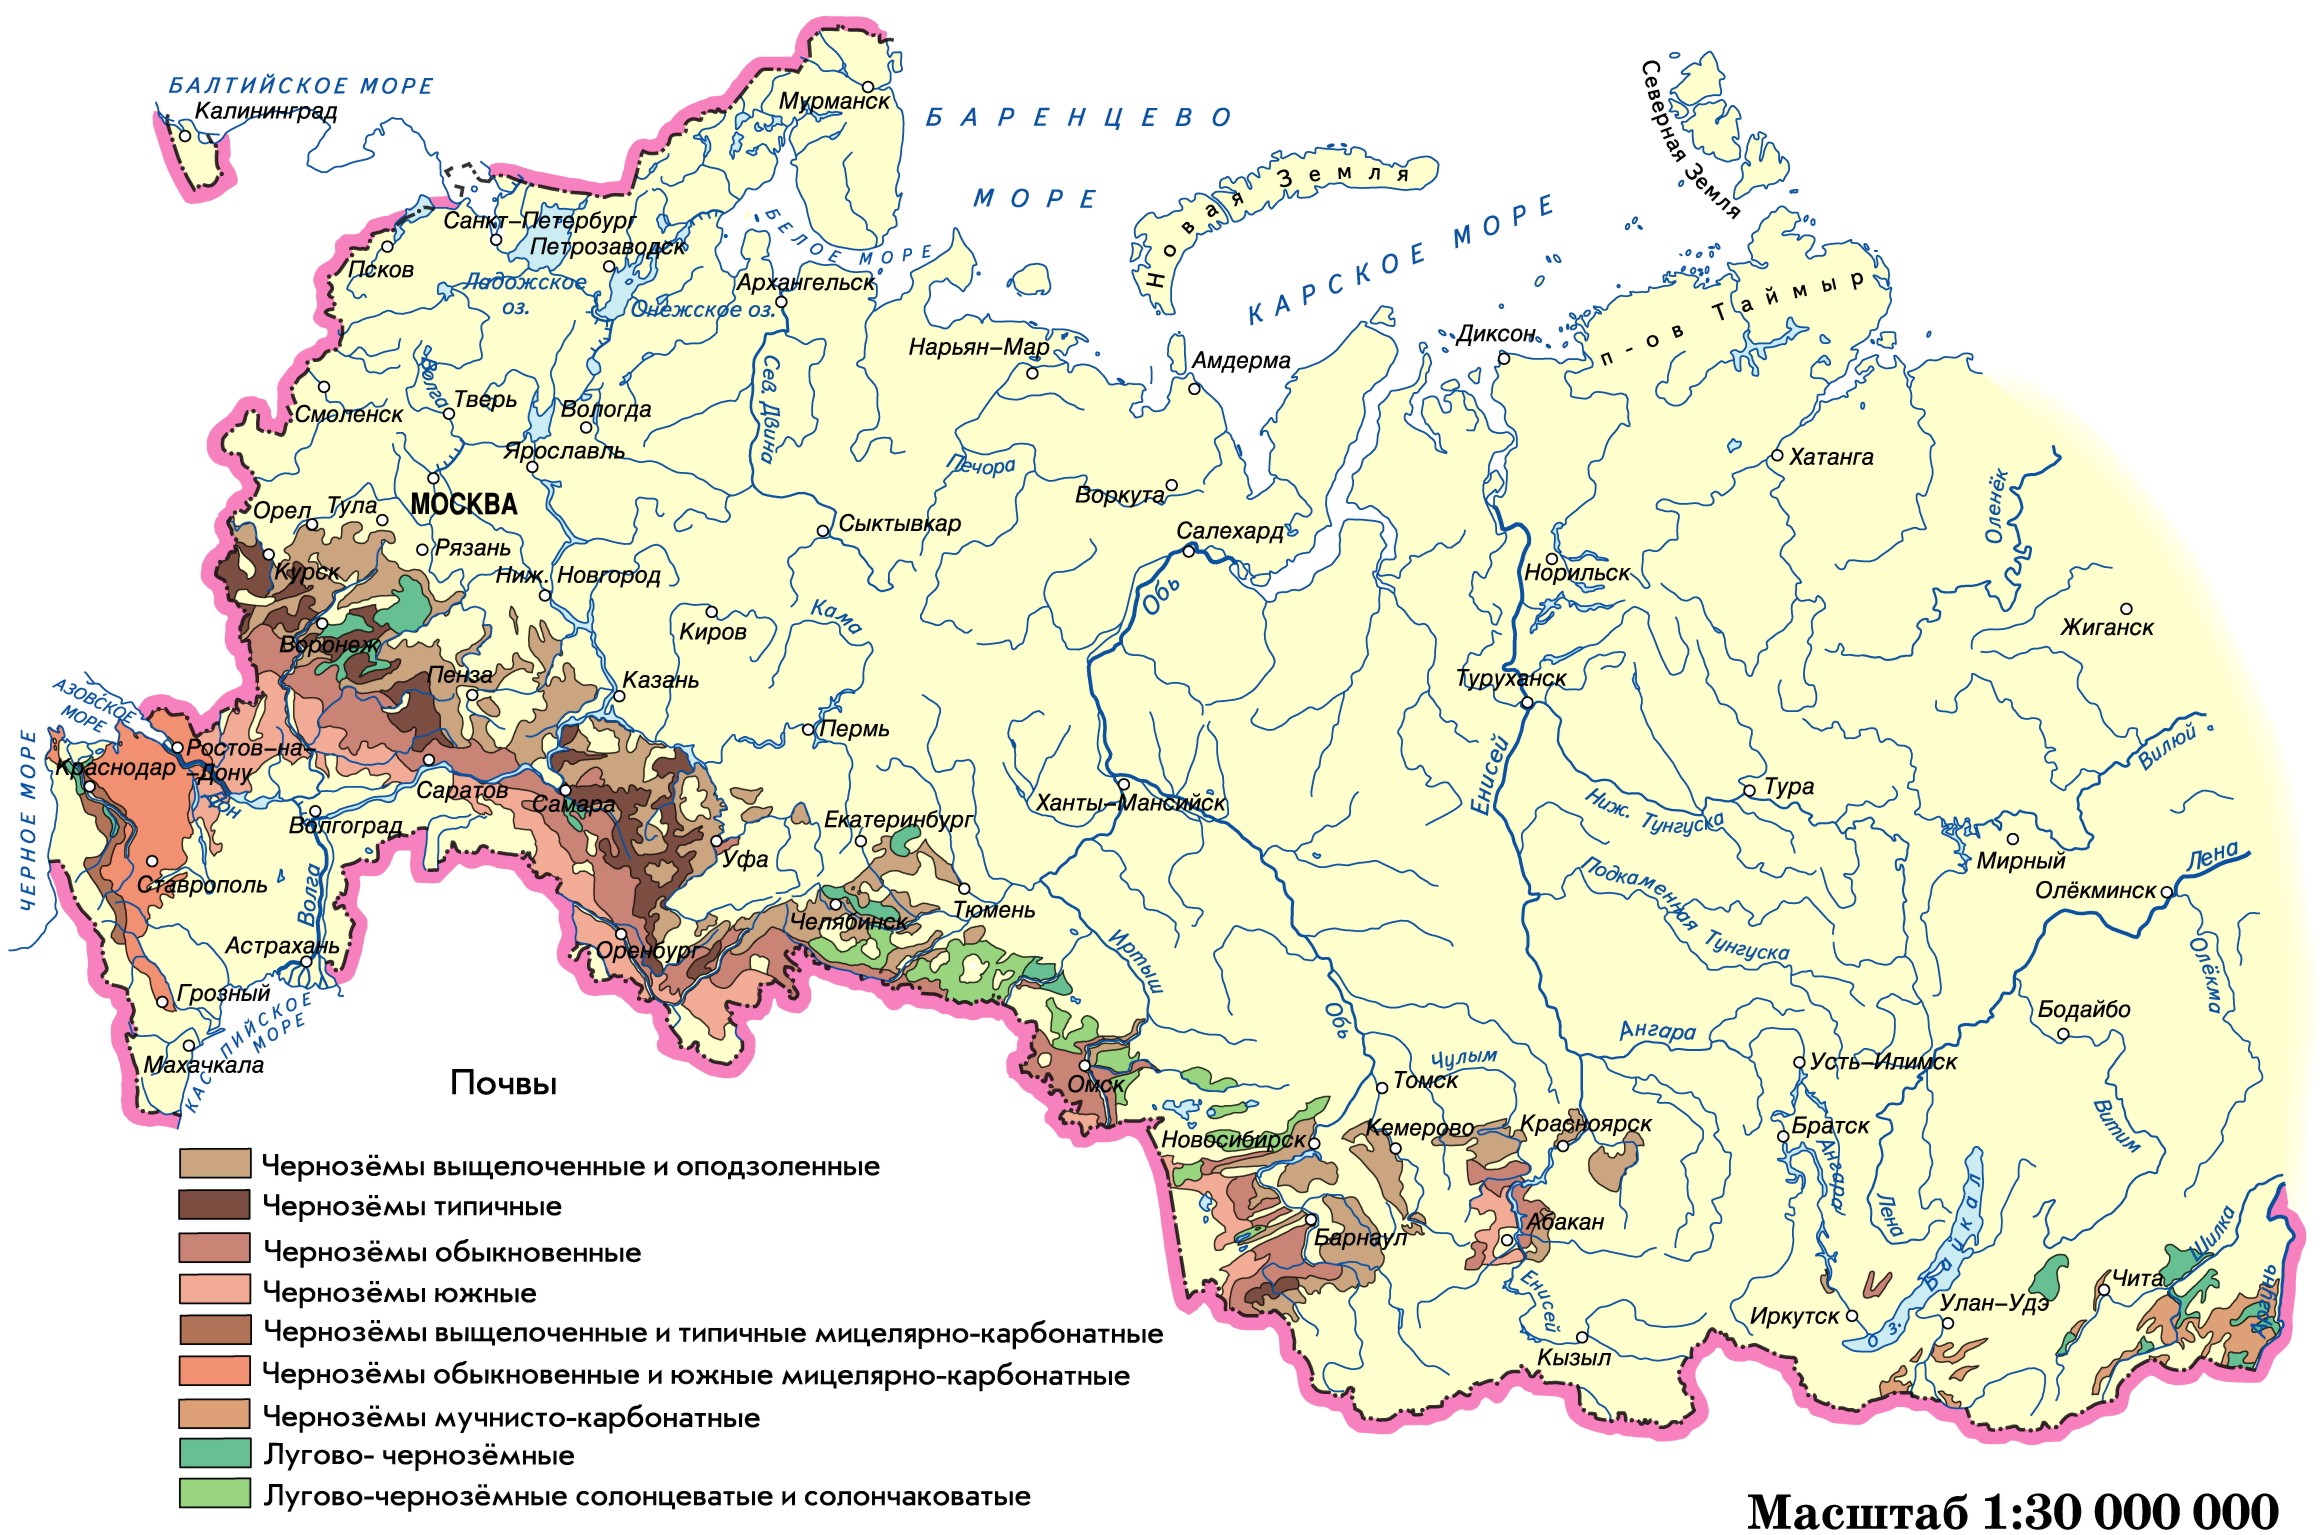 Природная зона чернозема: для каких зон характерны черноземные почвы в России и где они находятся в мире